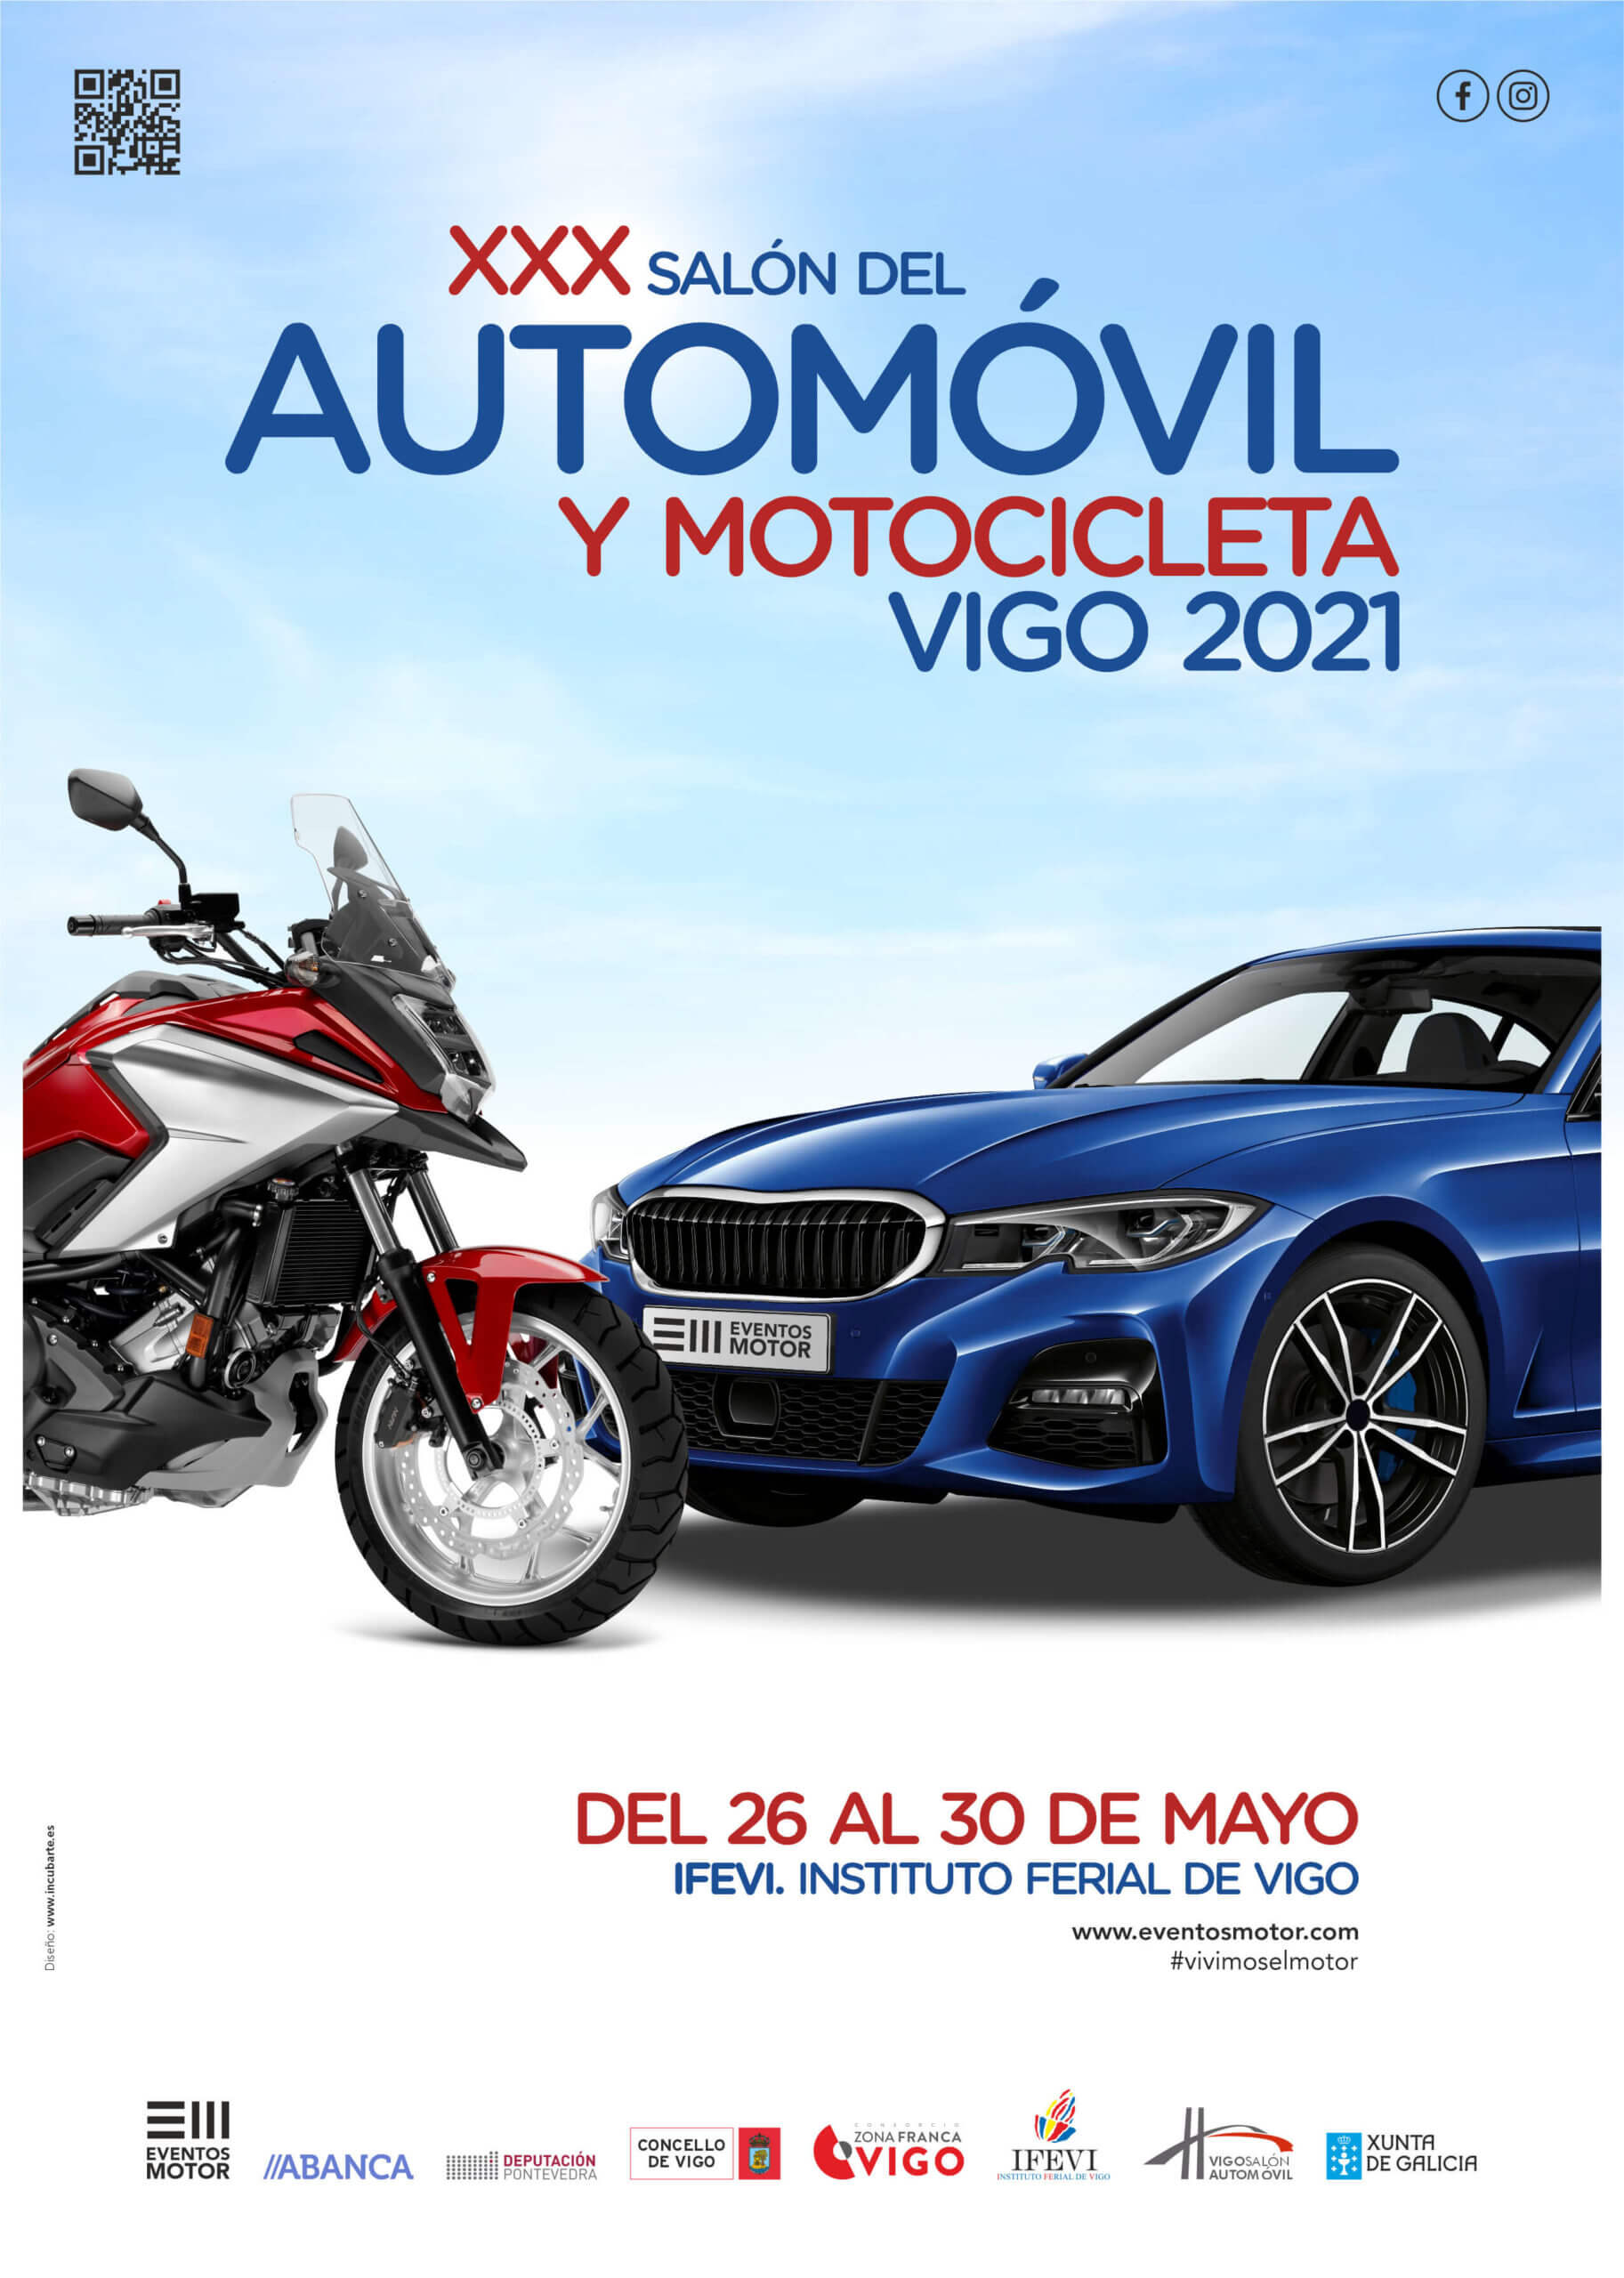 Salón del automóvil y motocicleta de Vigo 2021